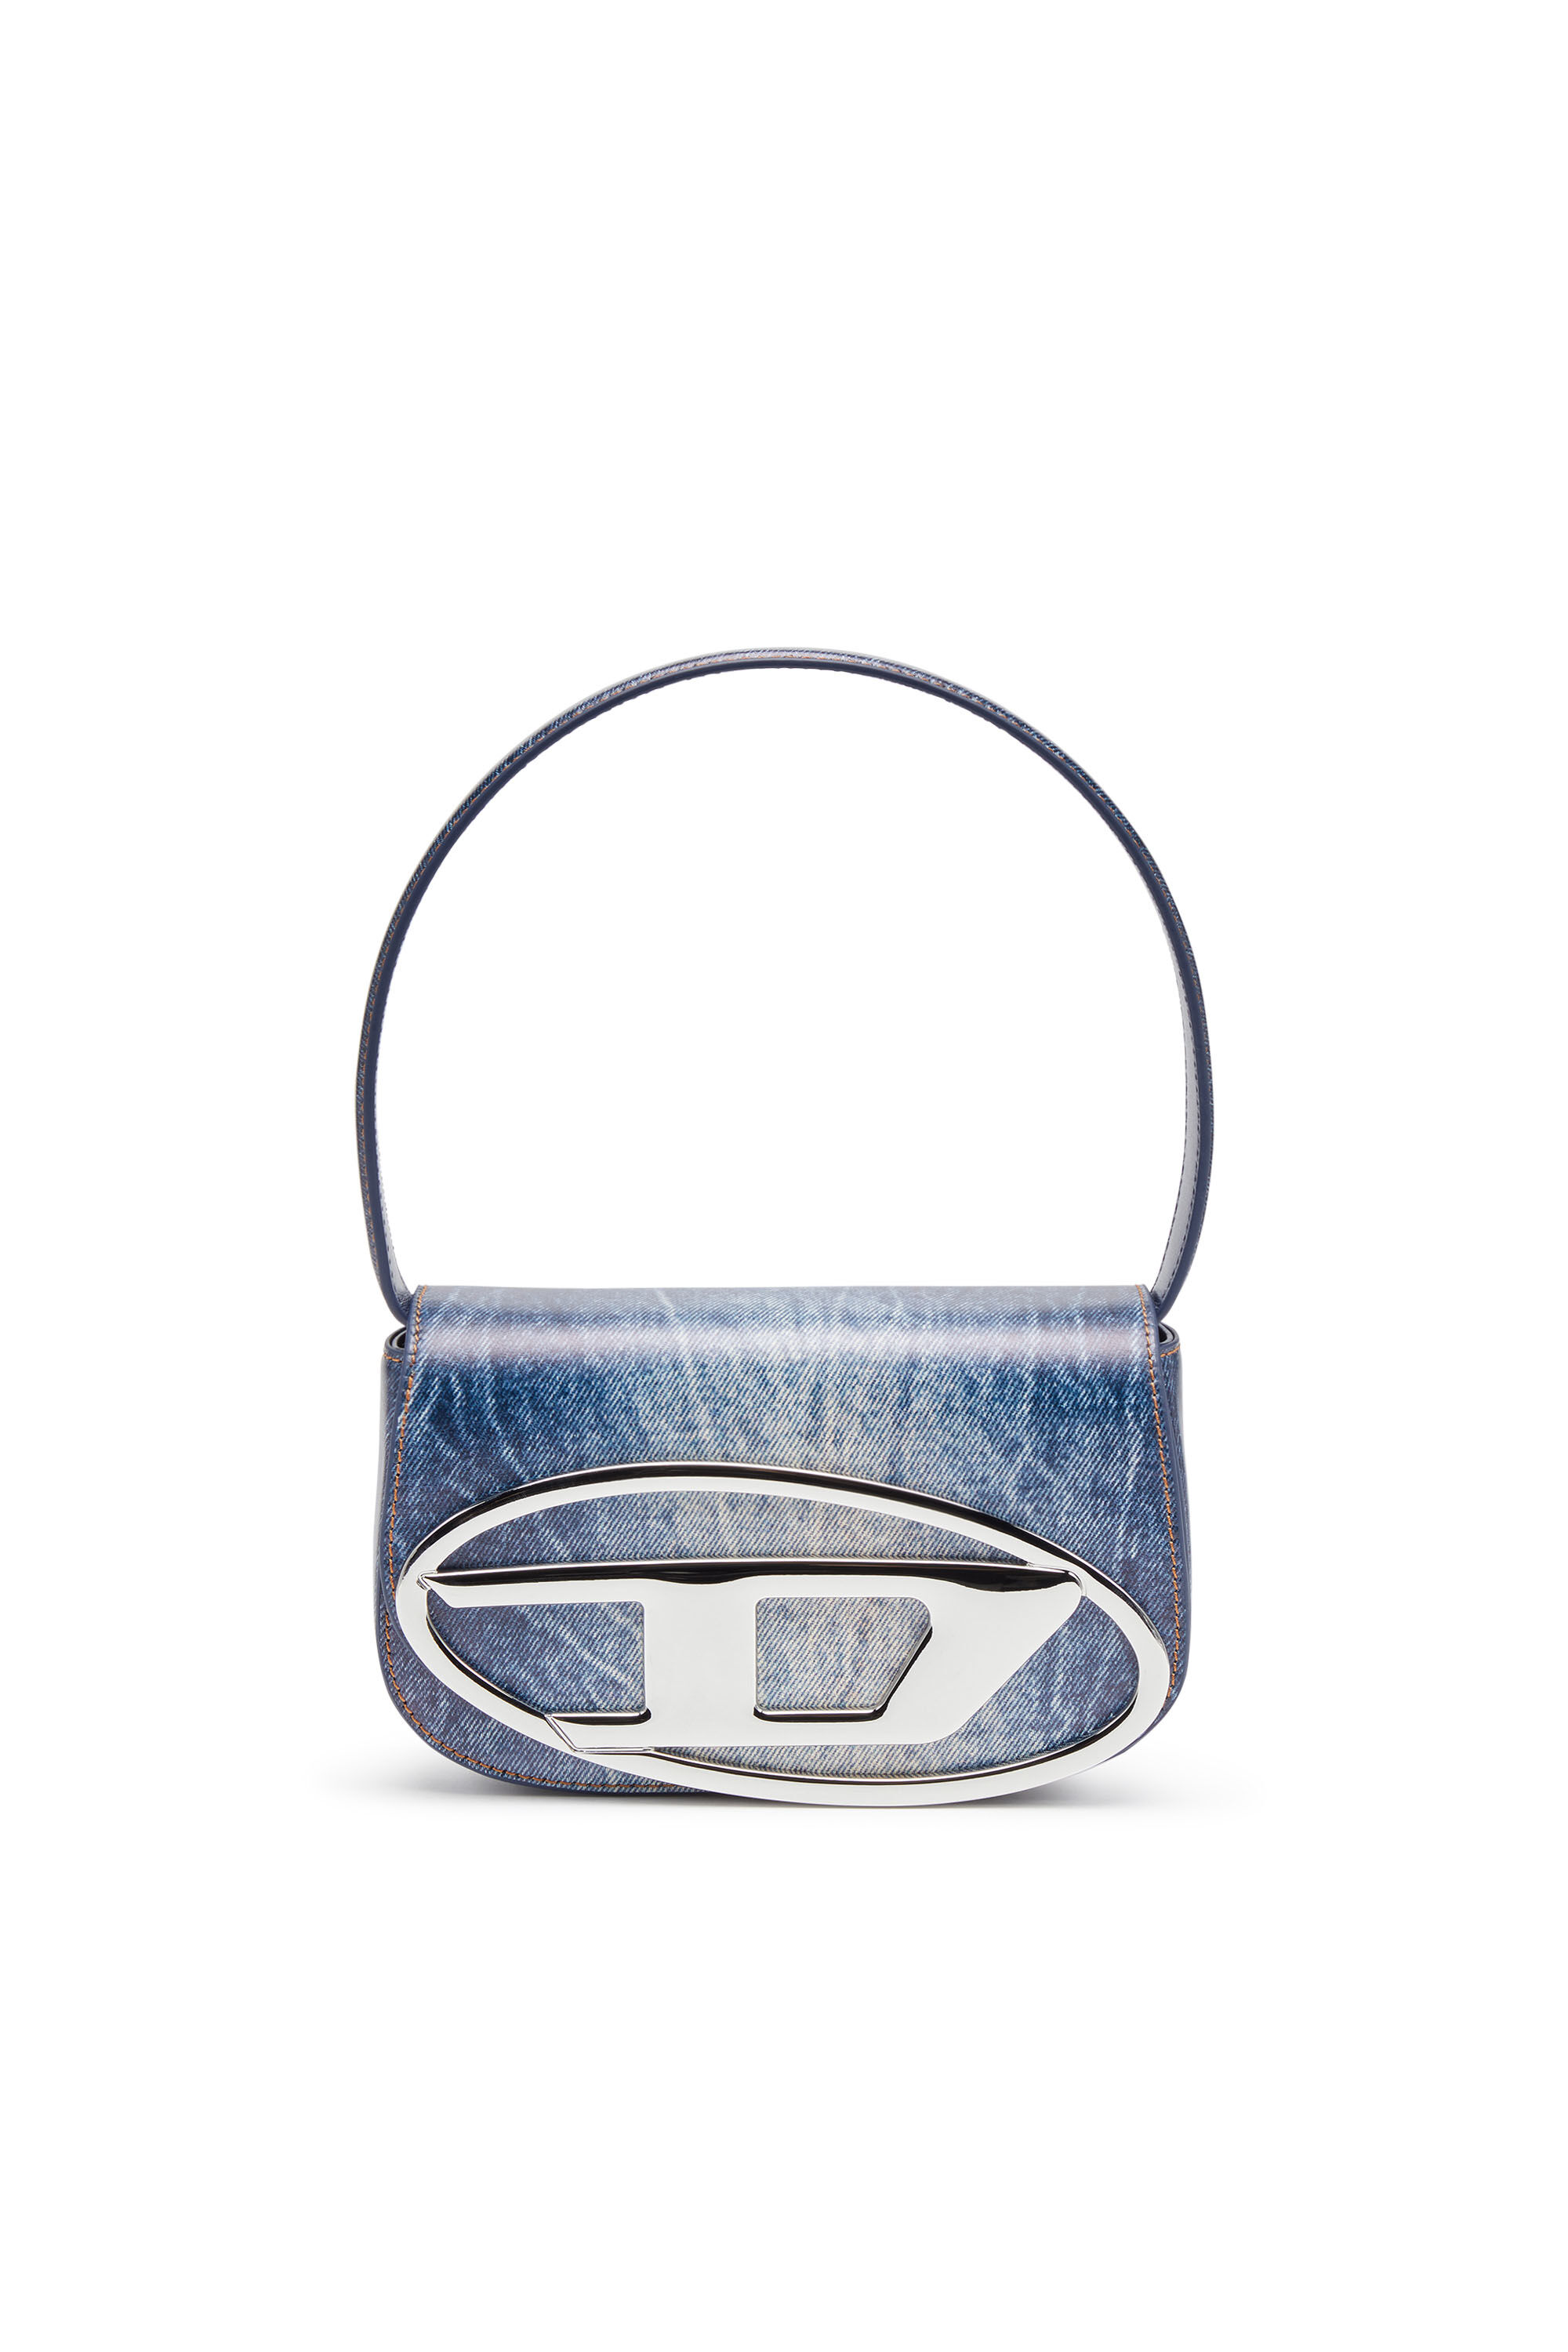 Women's 1DR-Iconic shoulder bag in denim-print leather | Blue | Diesel